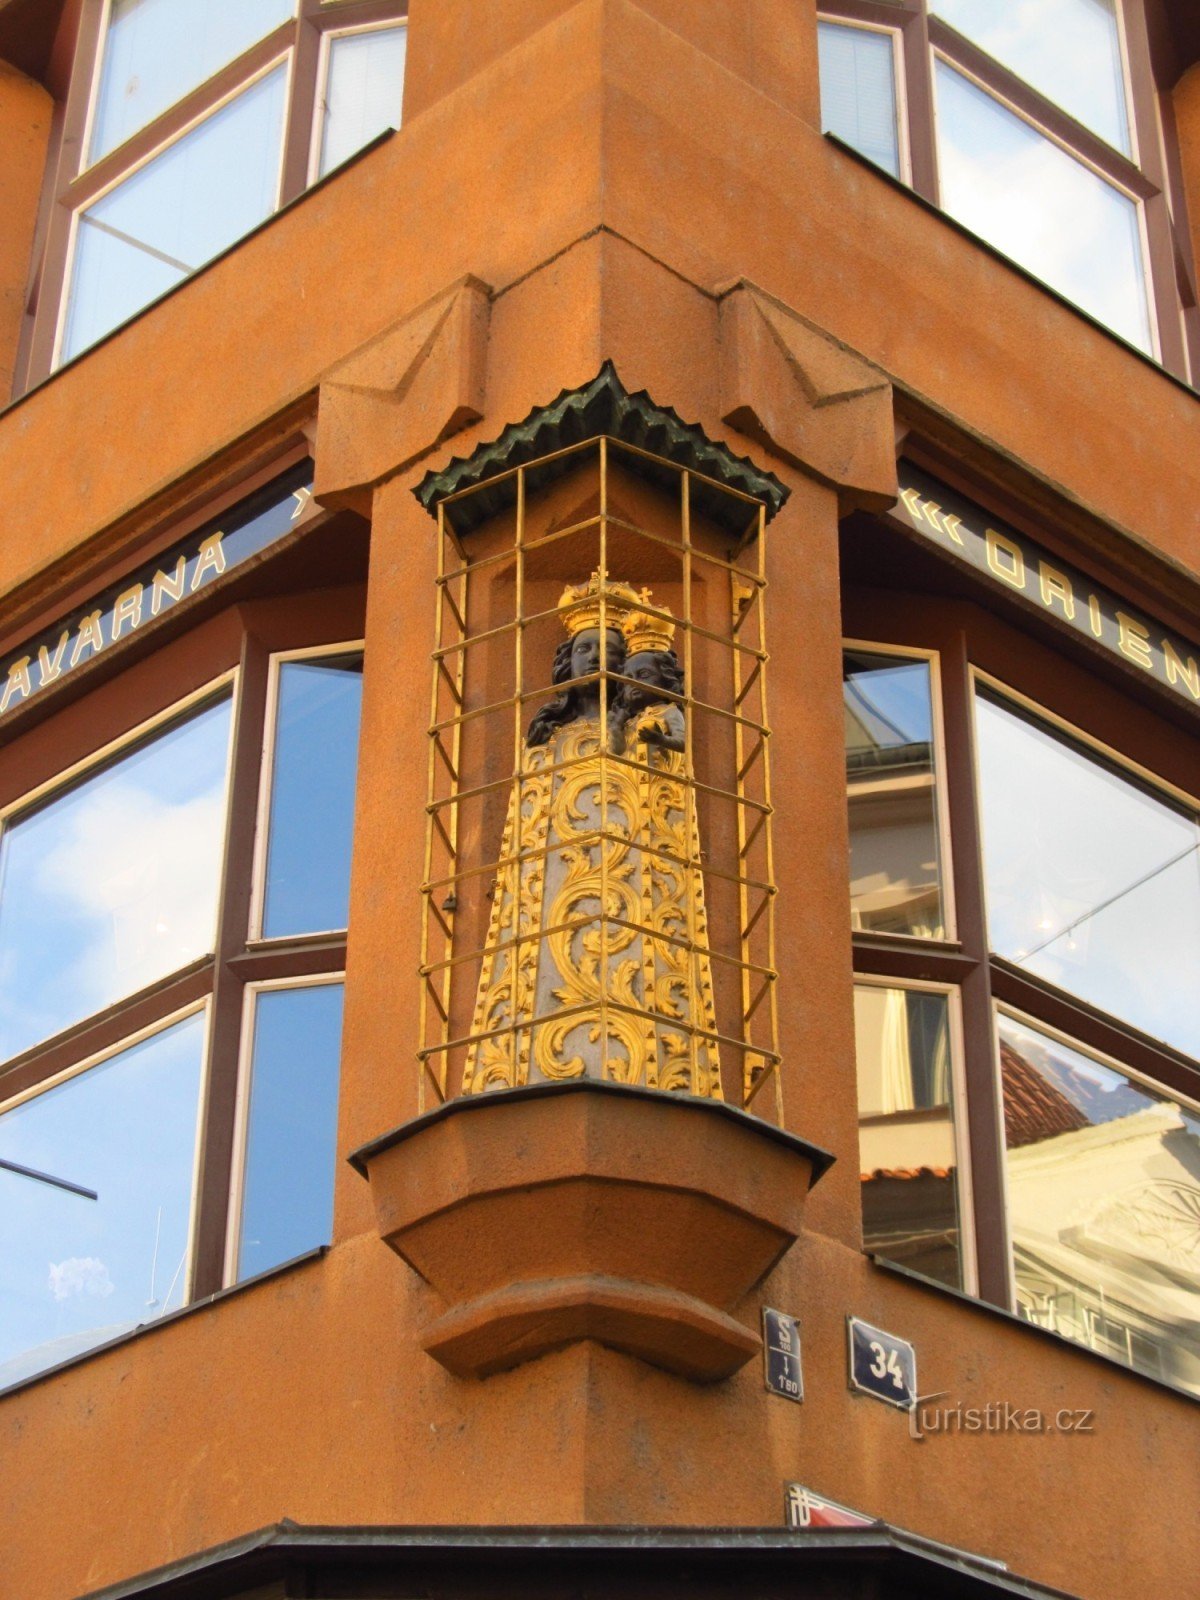 プラハのウ・チェルナー・マトカ・ボジの家の隅にあるバロック様式の小像